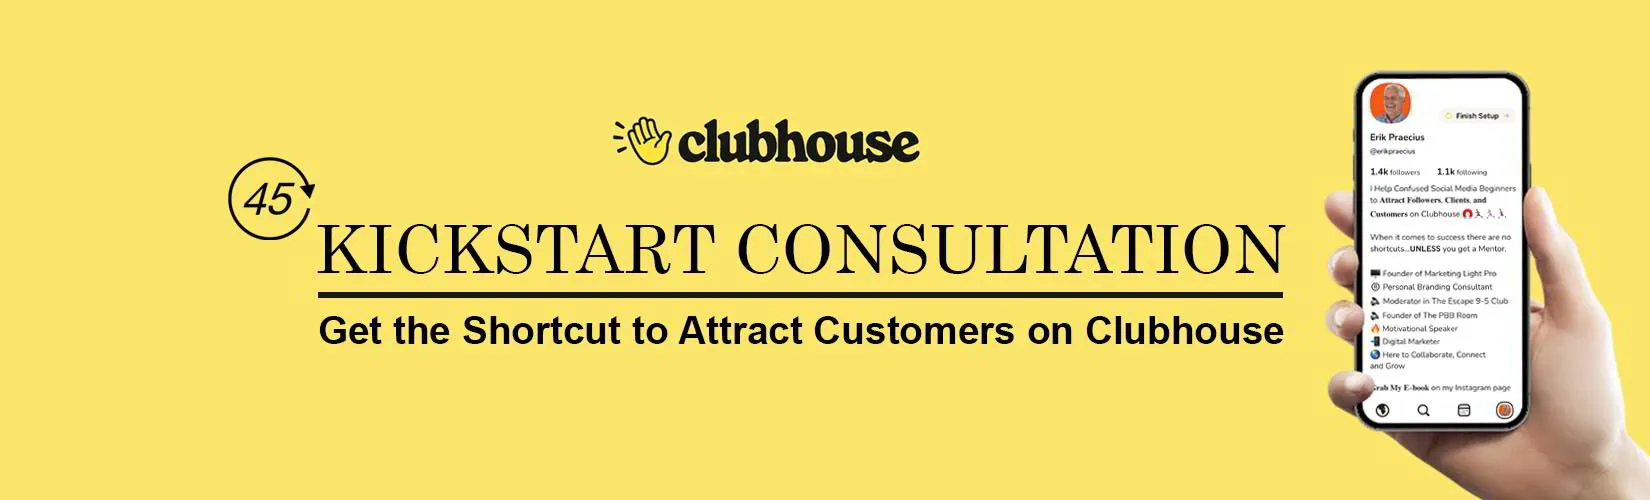 Clubhouse Kickstart Consultation